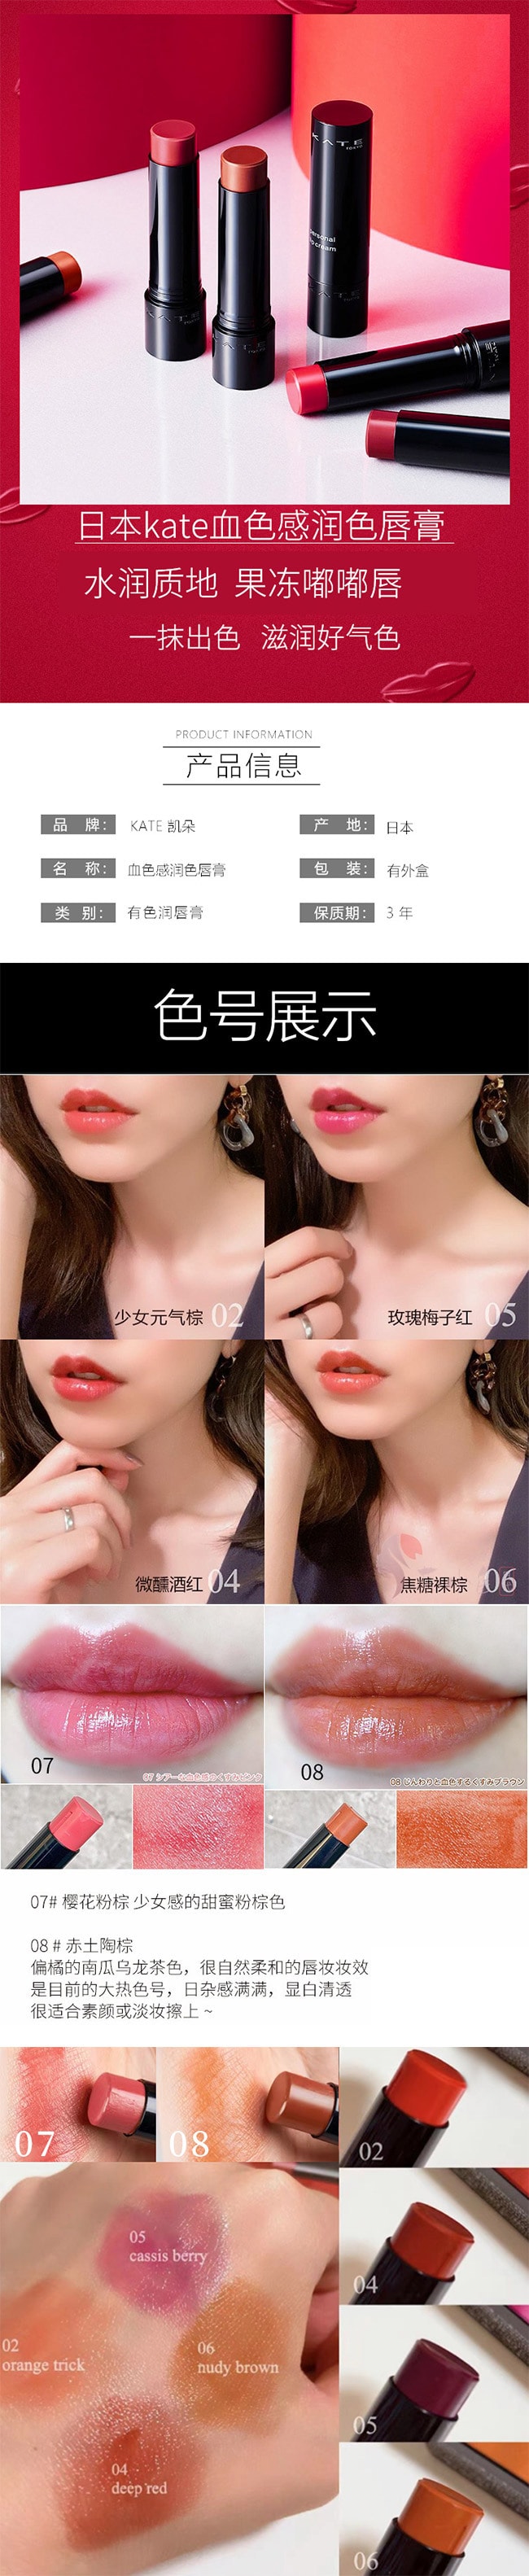 【日本直效郵件】KATE 凱朵 CC有色潤唇膏 3.7g #06